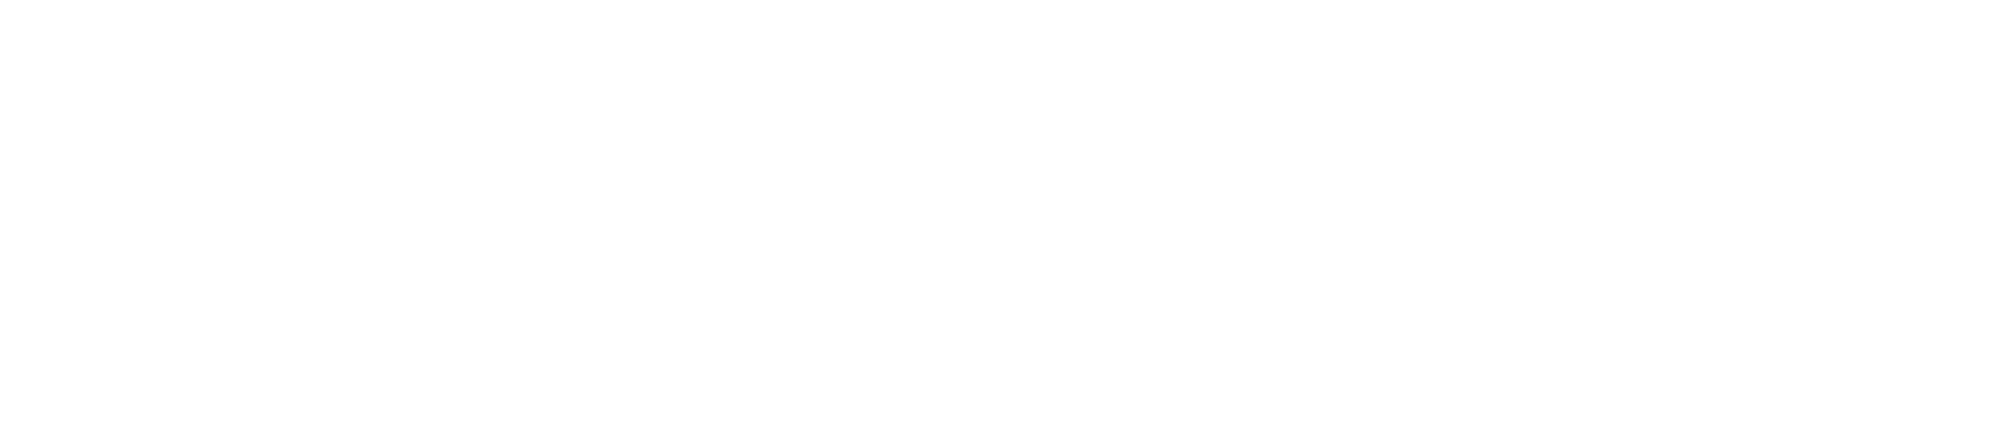 rwpsychology-logo-full-white